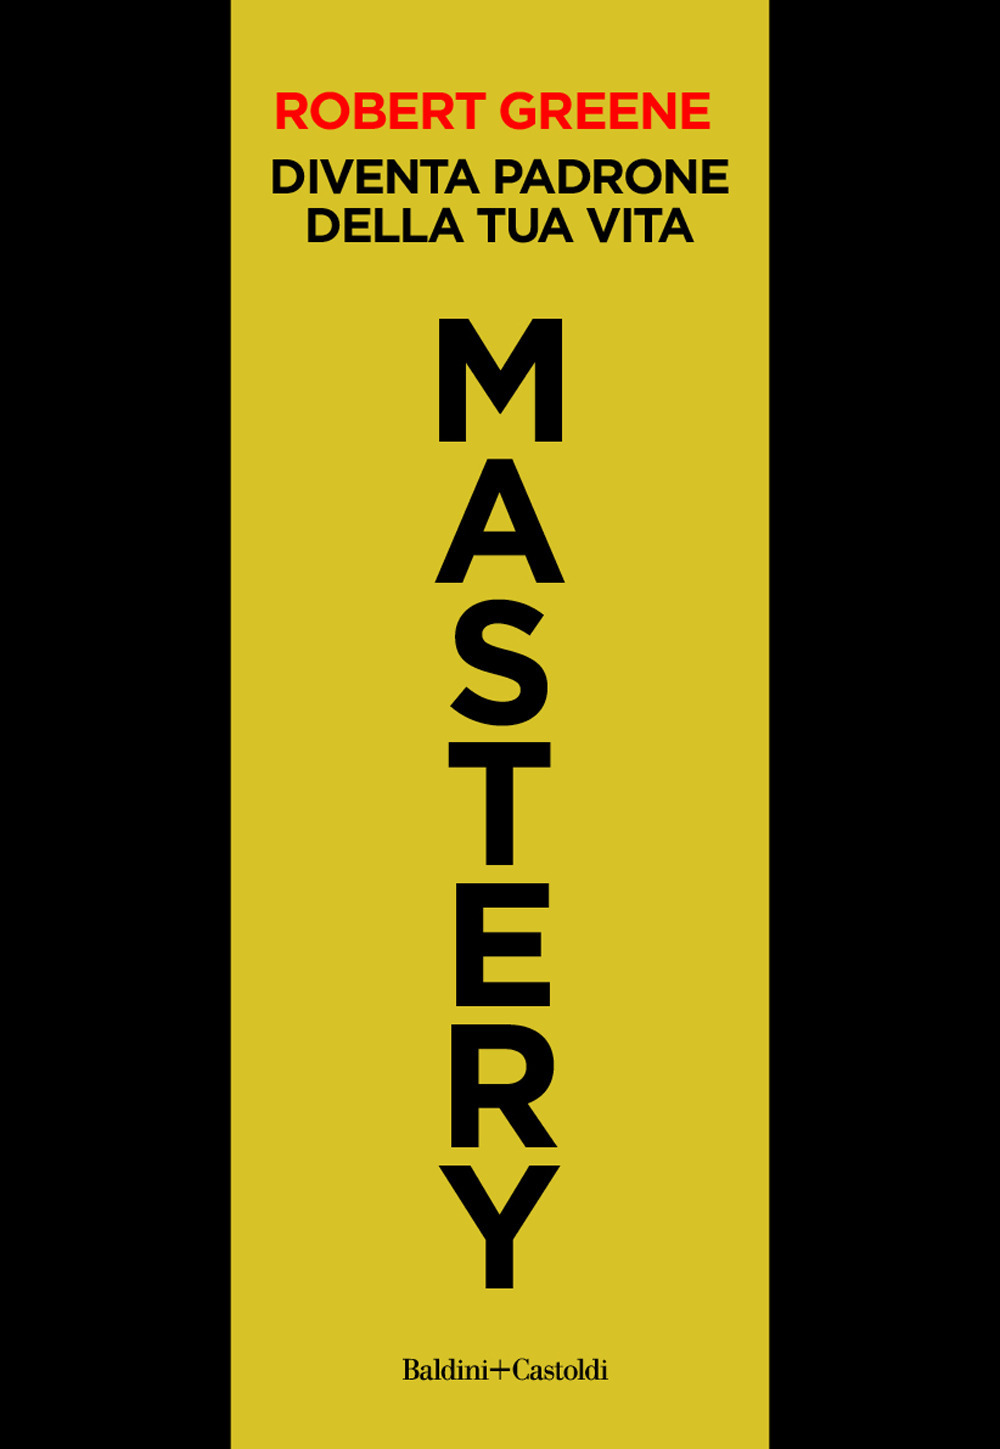 Mastery. Diventa padrone della tua vita